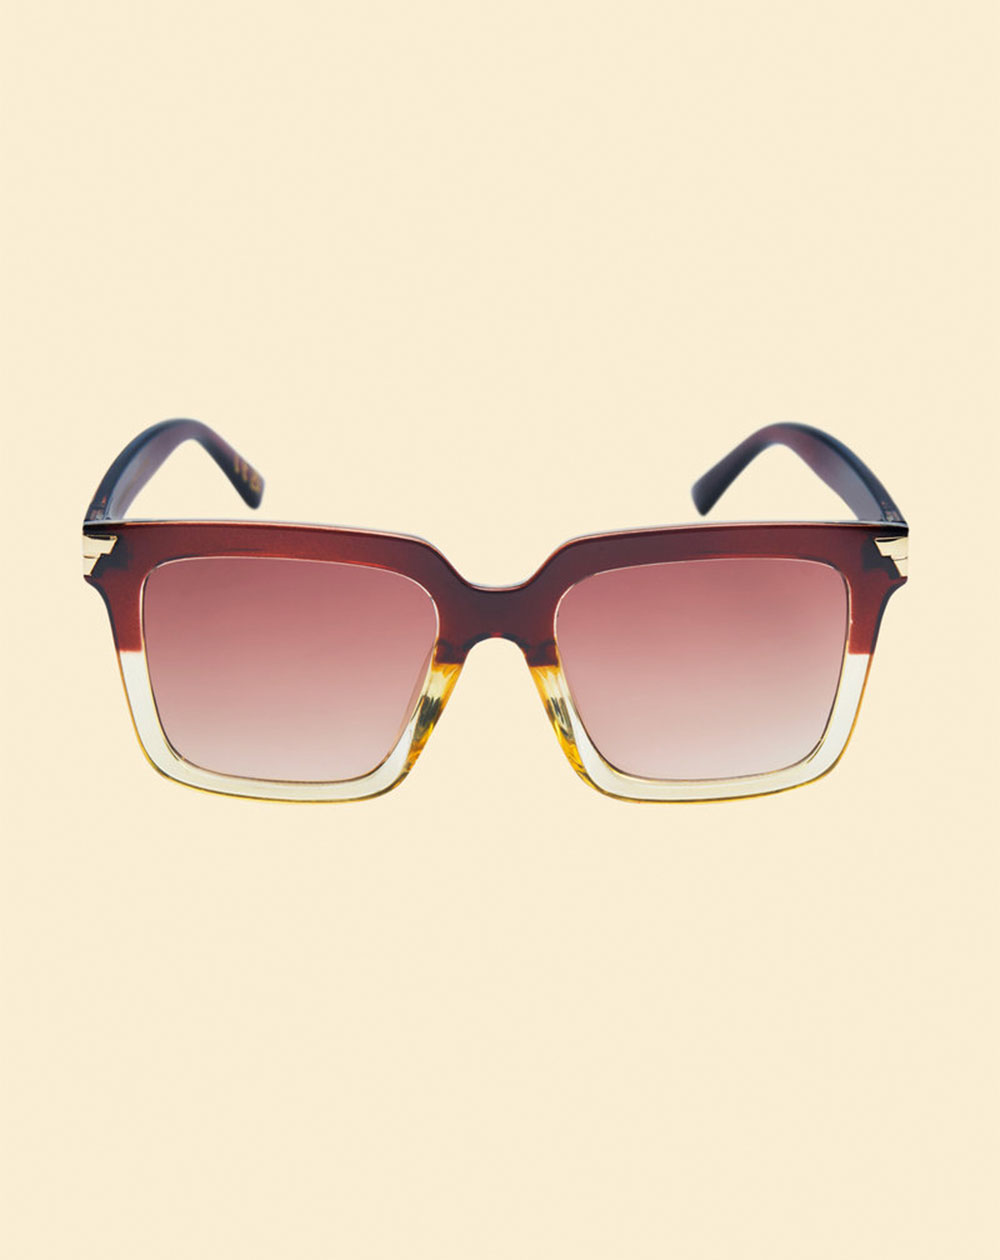 Powder FAL1 - Luxe Fallon Sunglasses in Mahogany/Nude